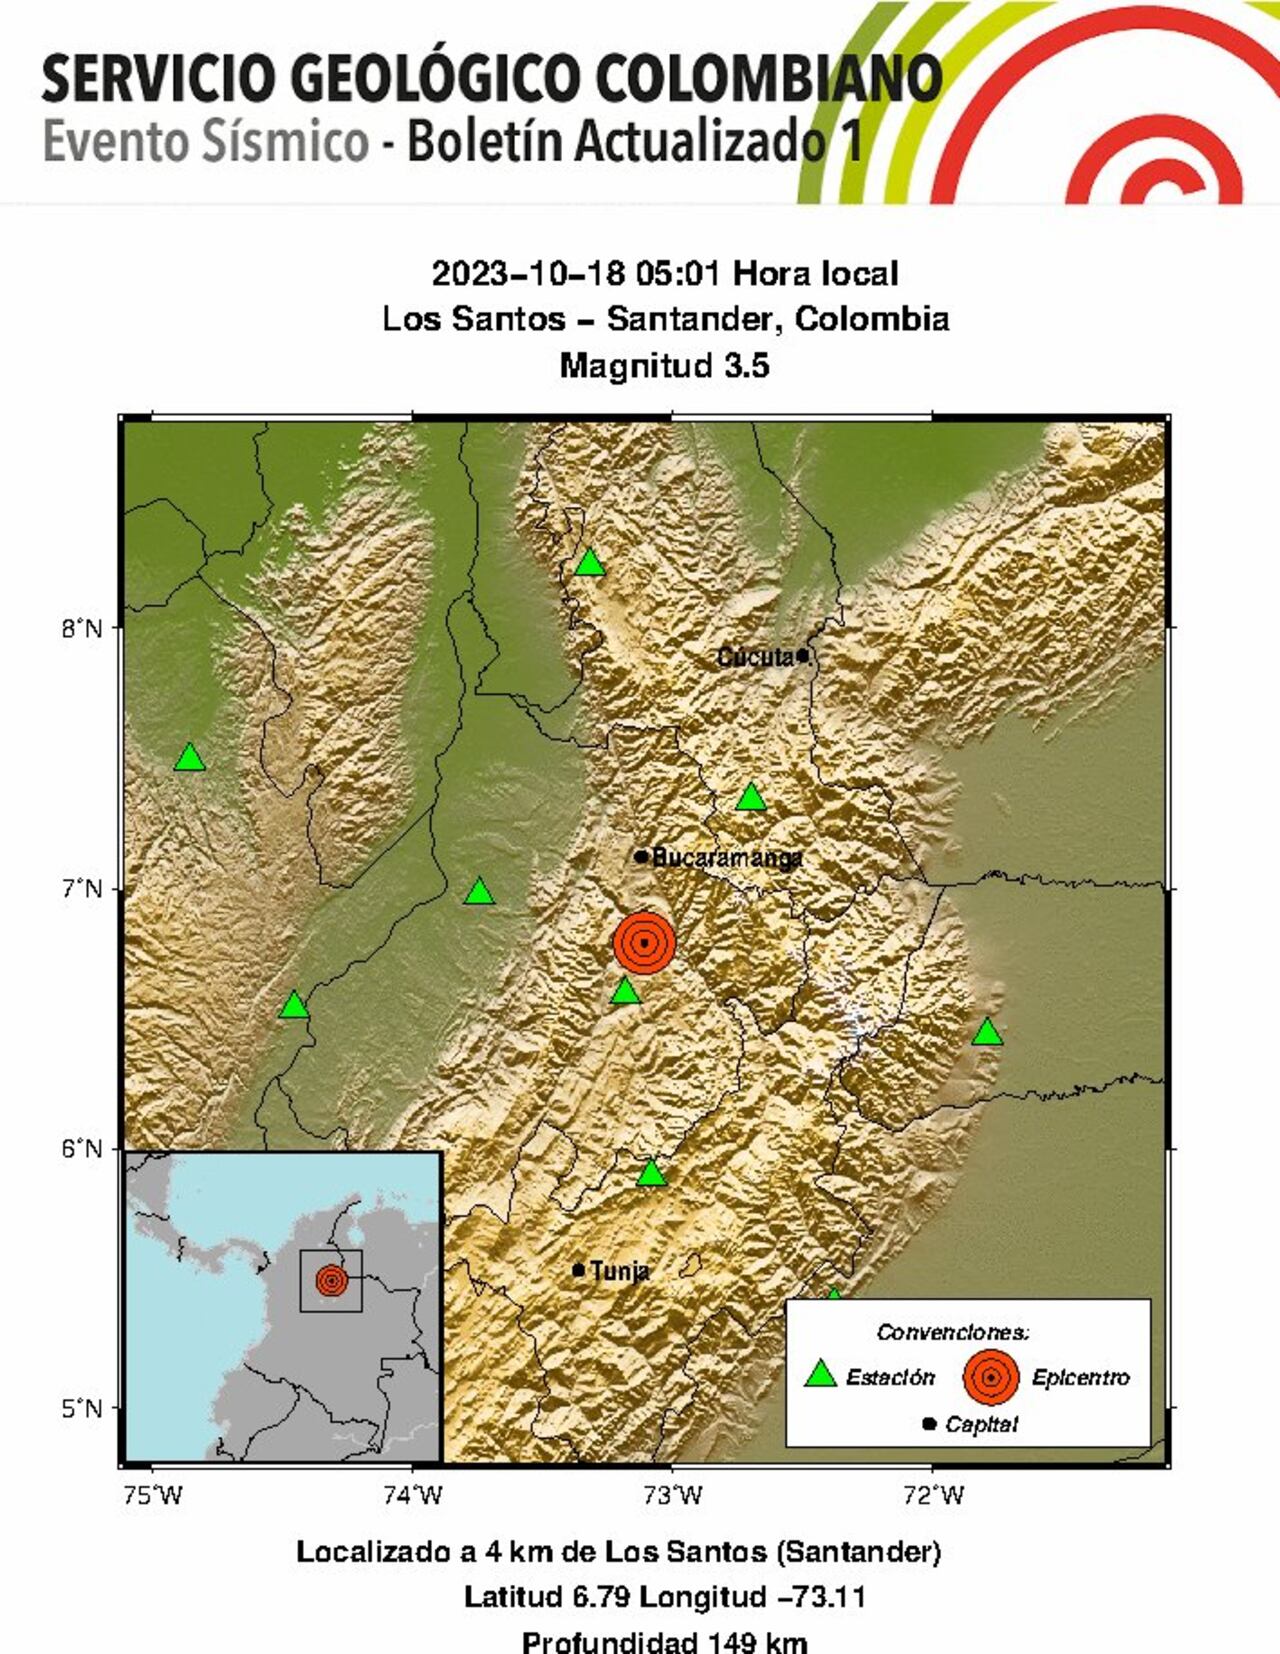 Los detalles del sismo en Santander.